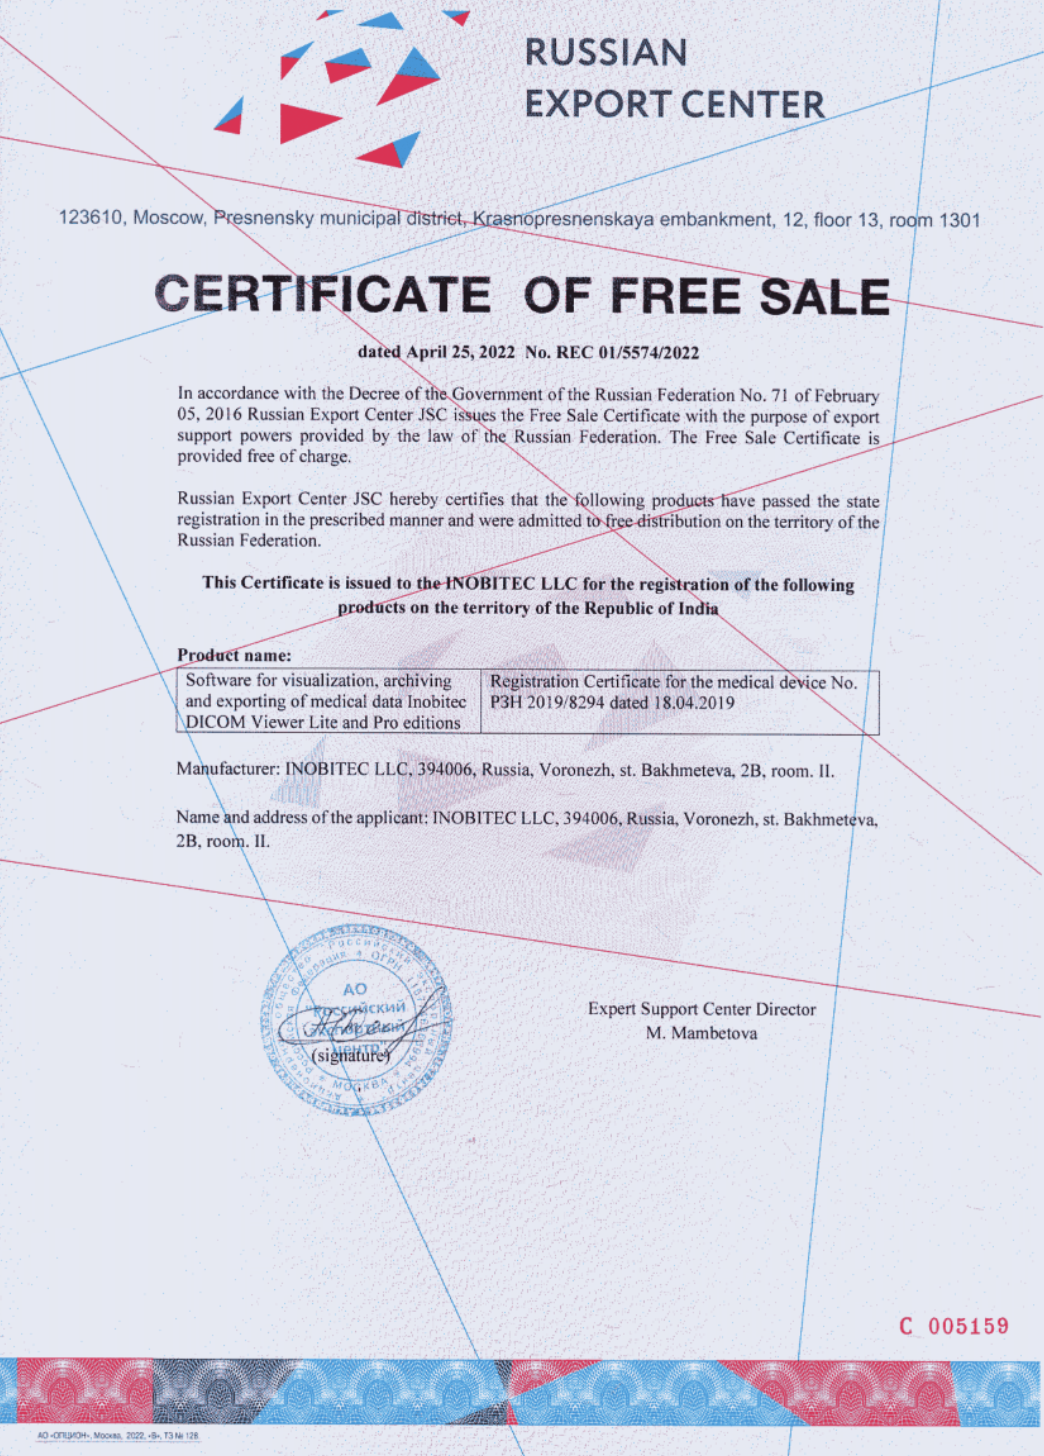 Сертификат свободной торговли No. REC 01/5574/2022